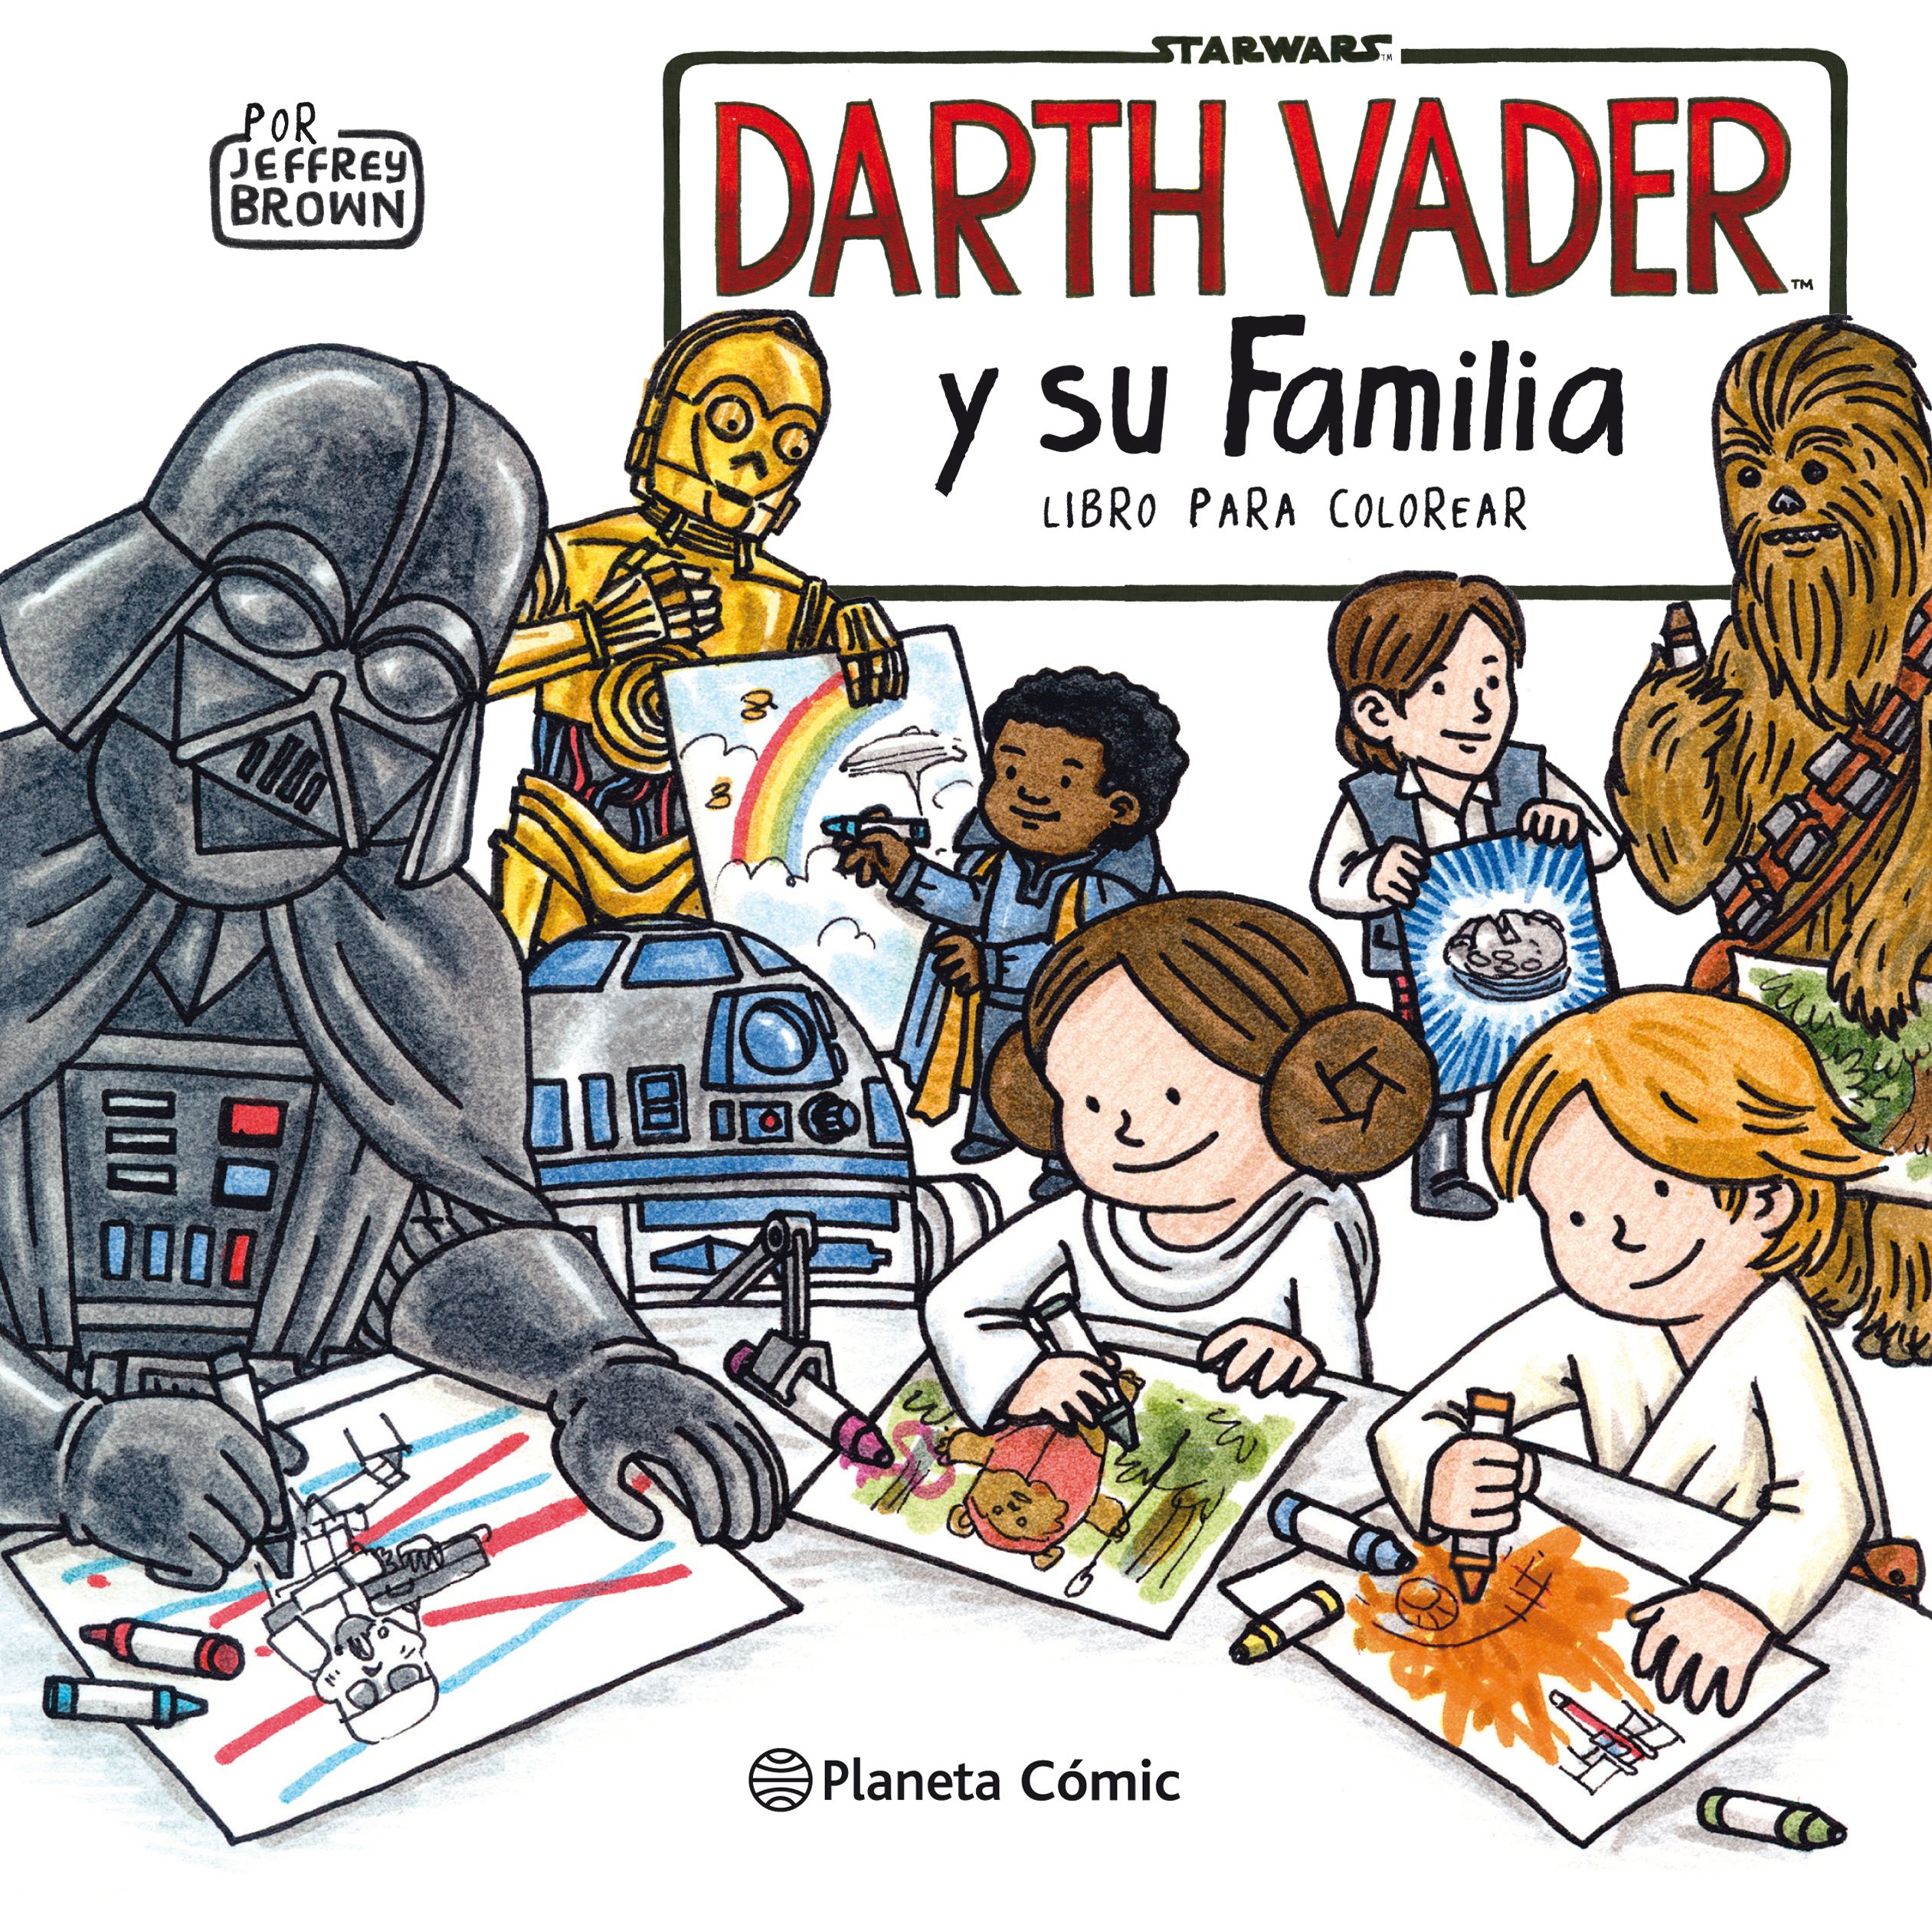 Star Wars Darth Vader y su familia. Libro para colorear